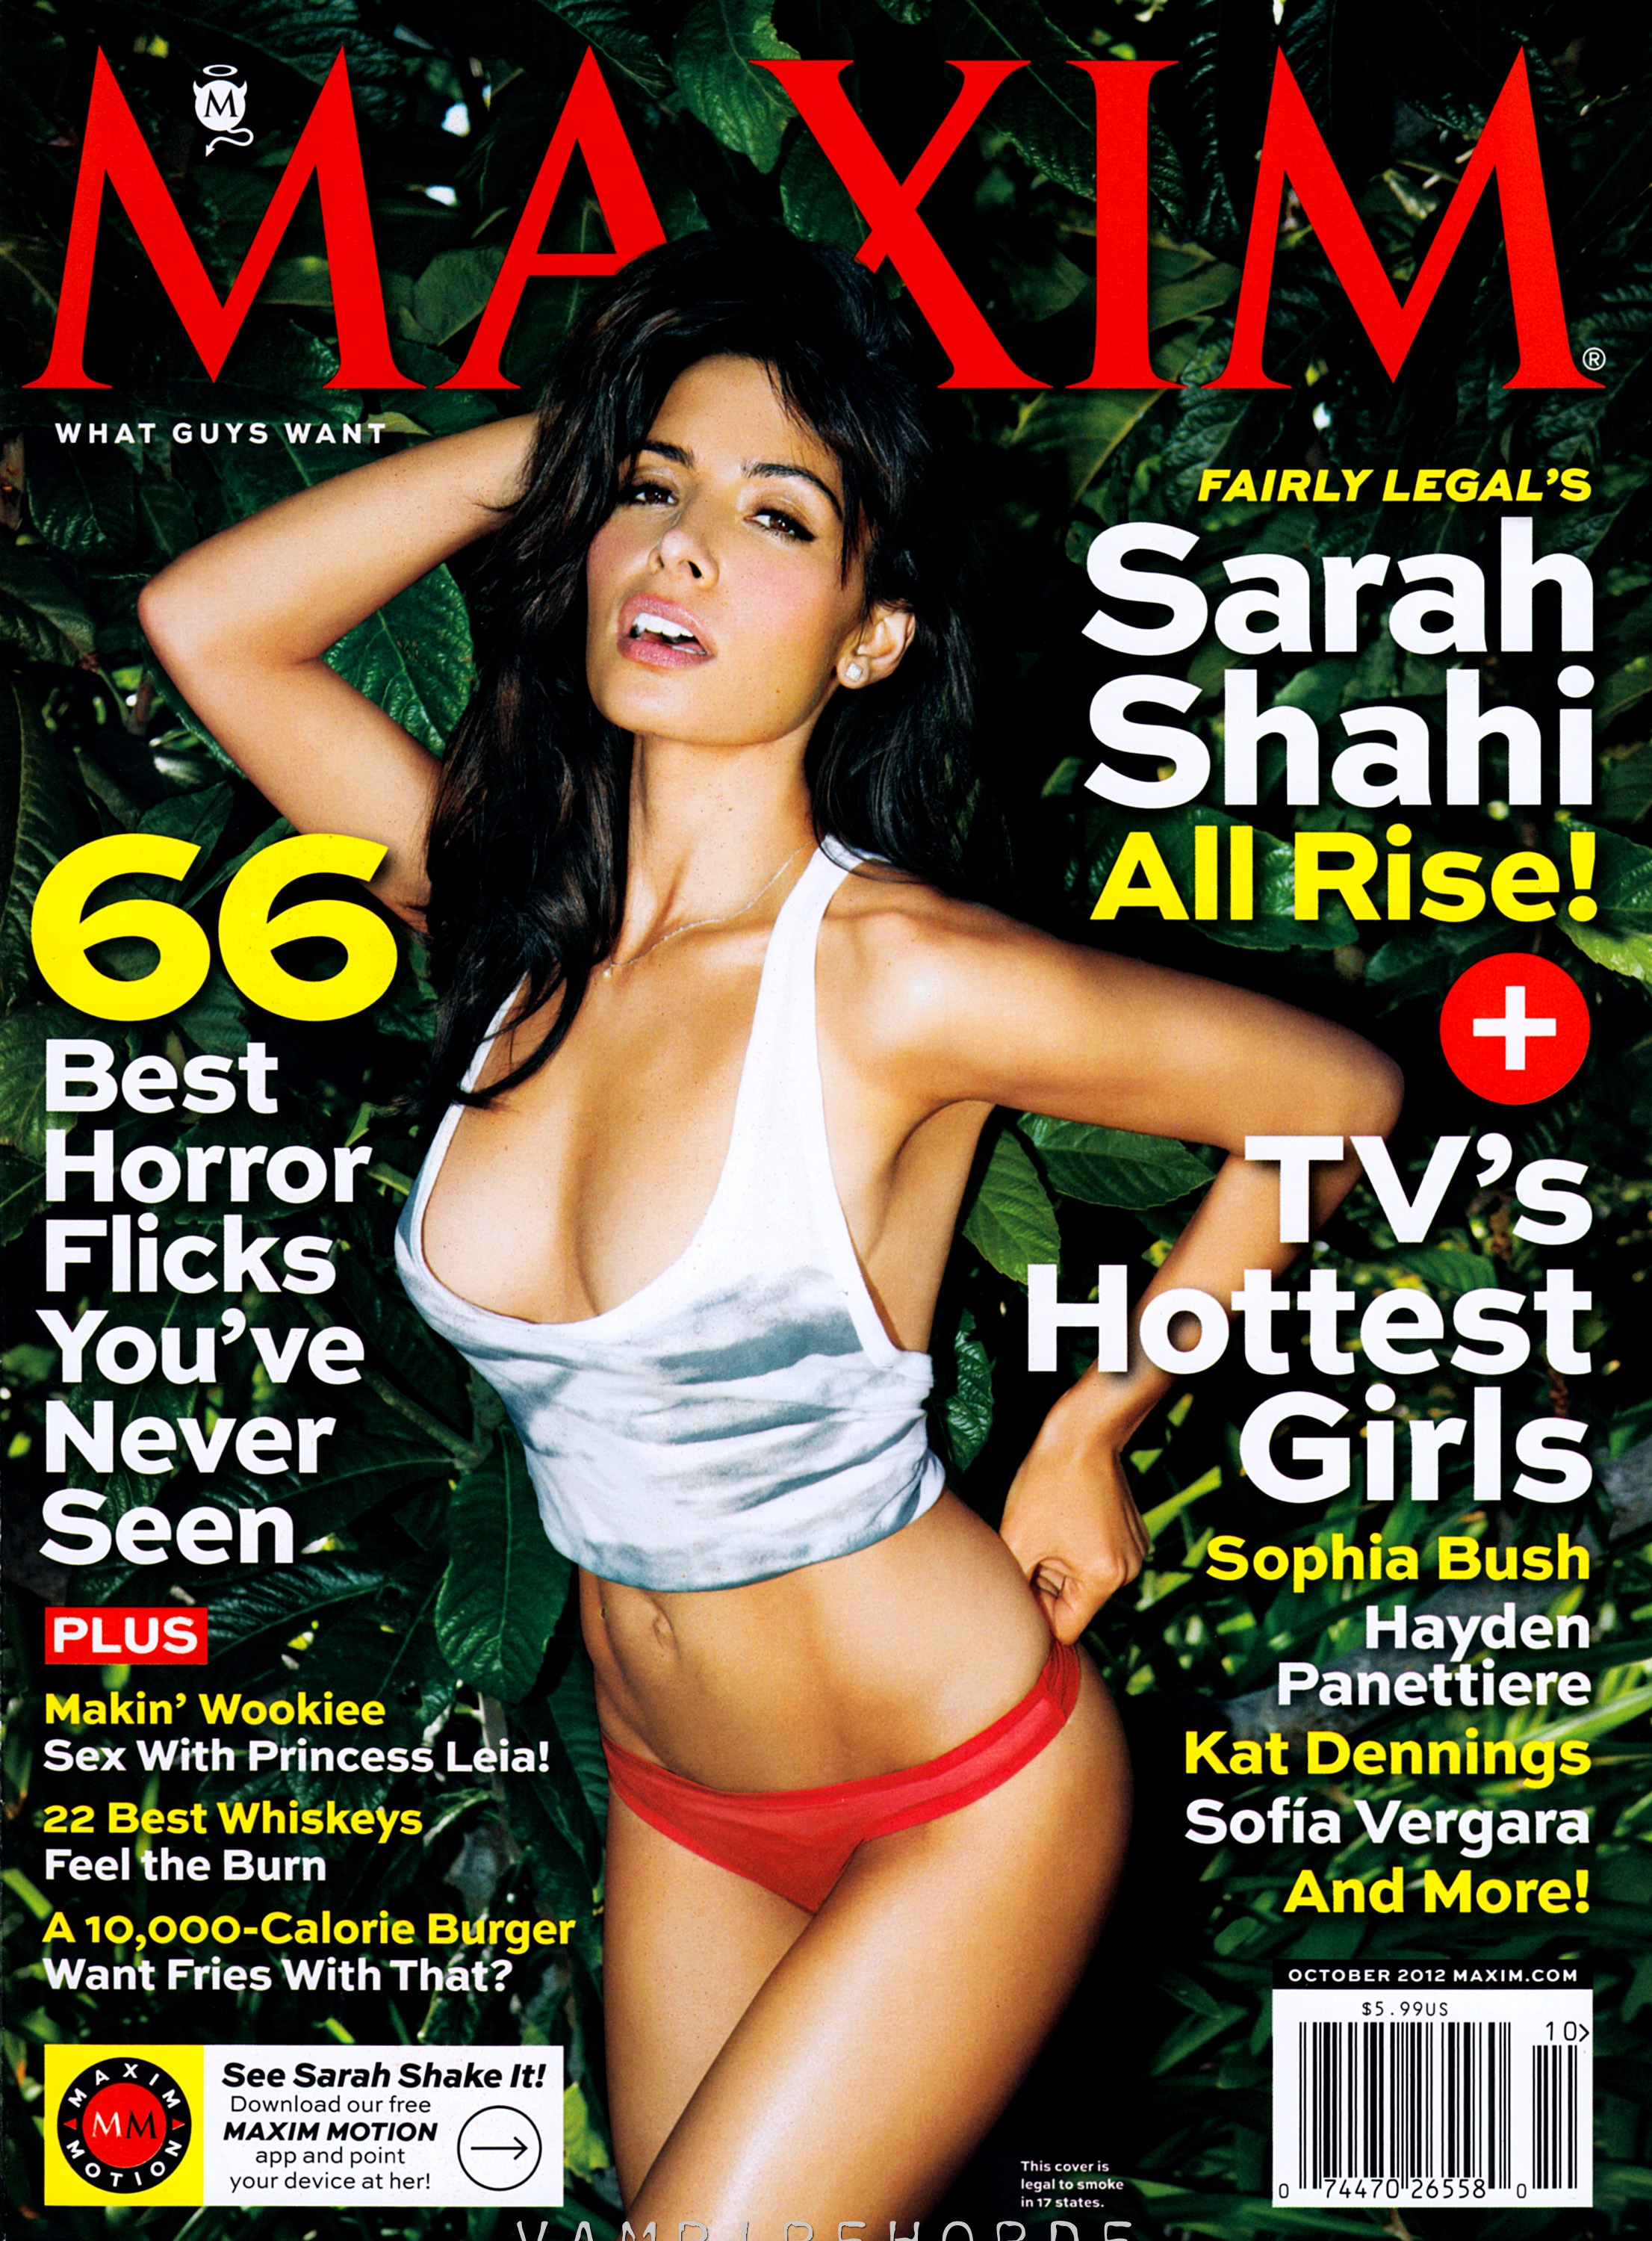 Sarah Shahi for Maxim Magazine